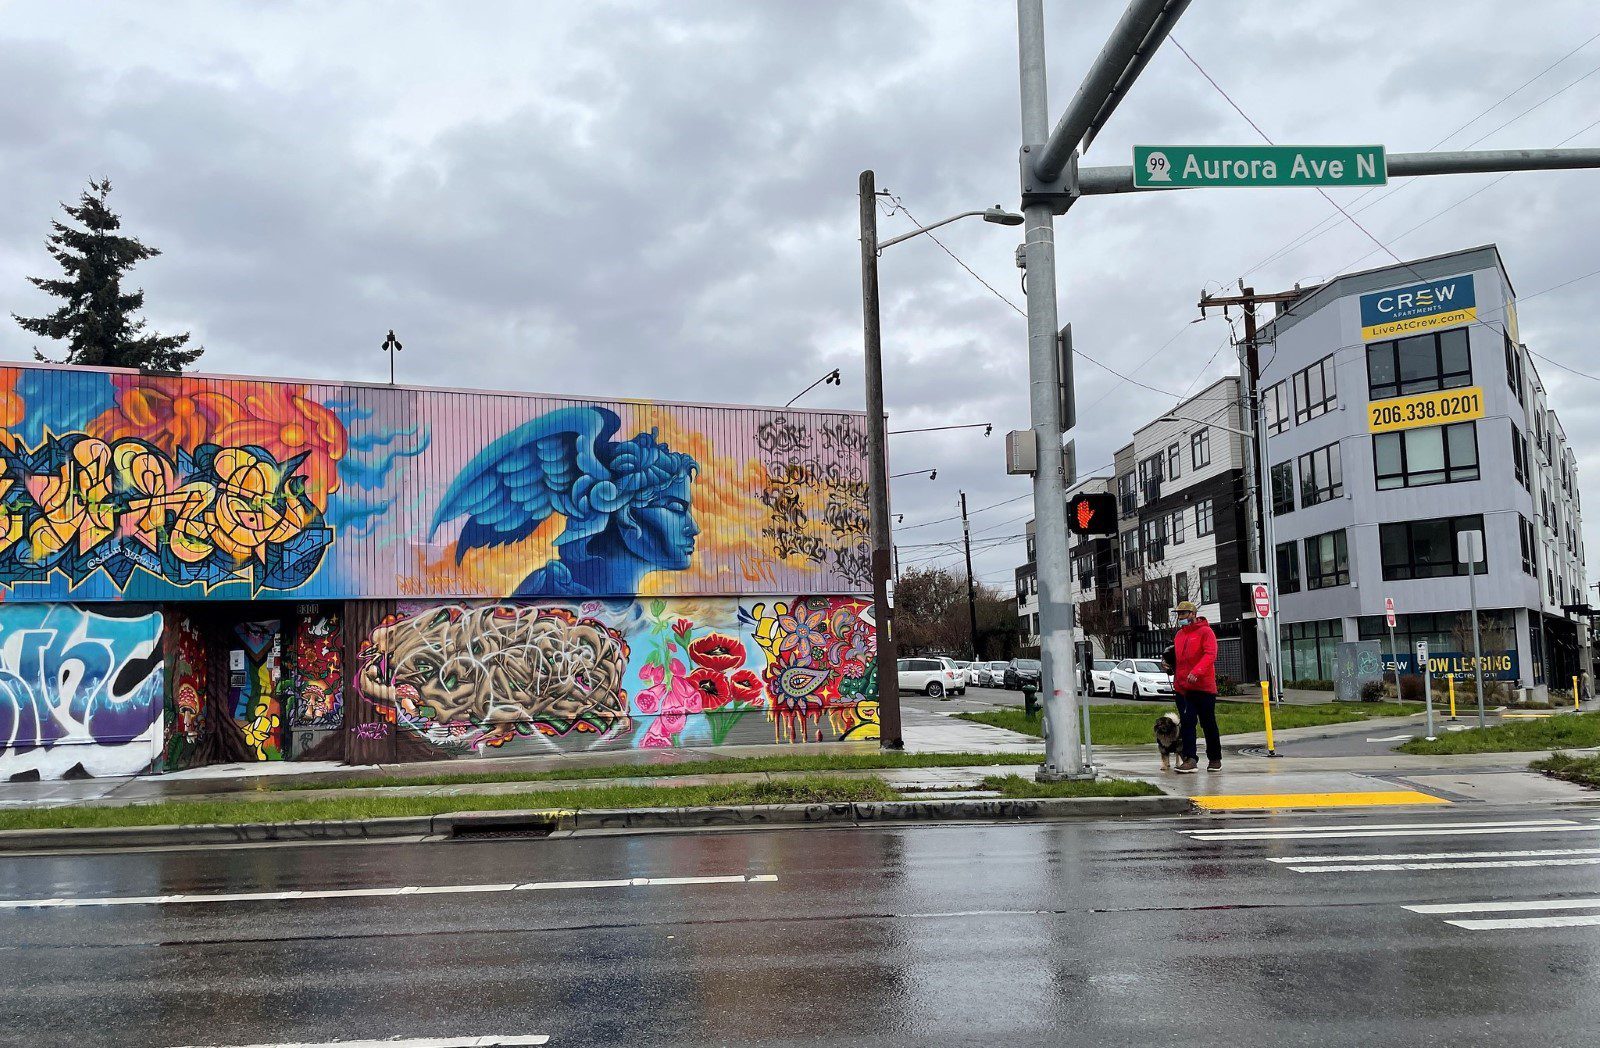 Colorful mural on Aurora Ave N near Green Lake Drive N. 